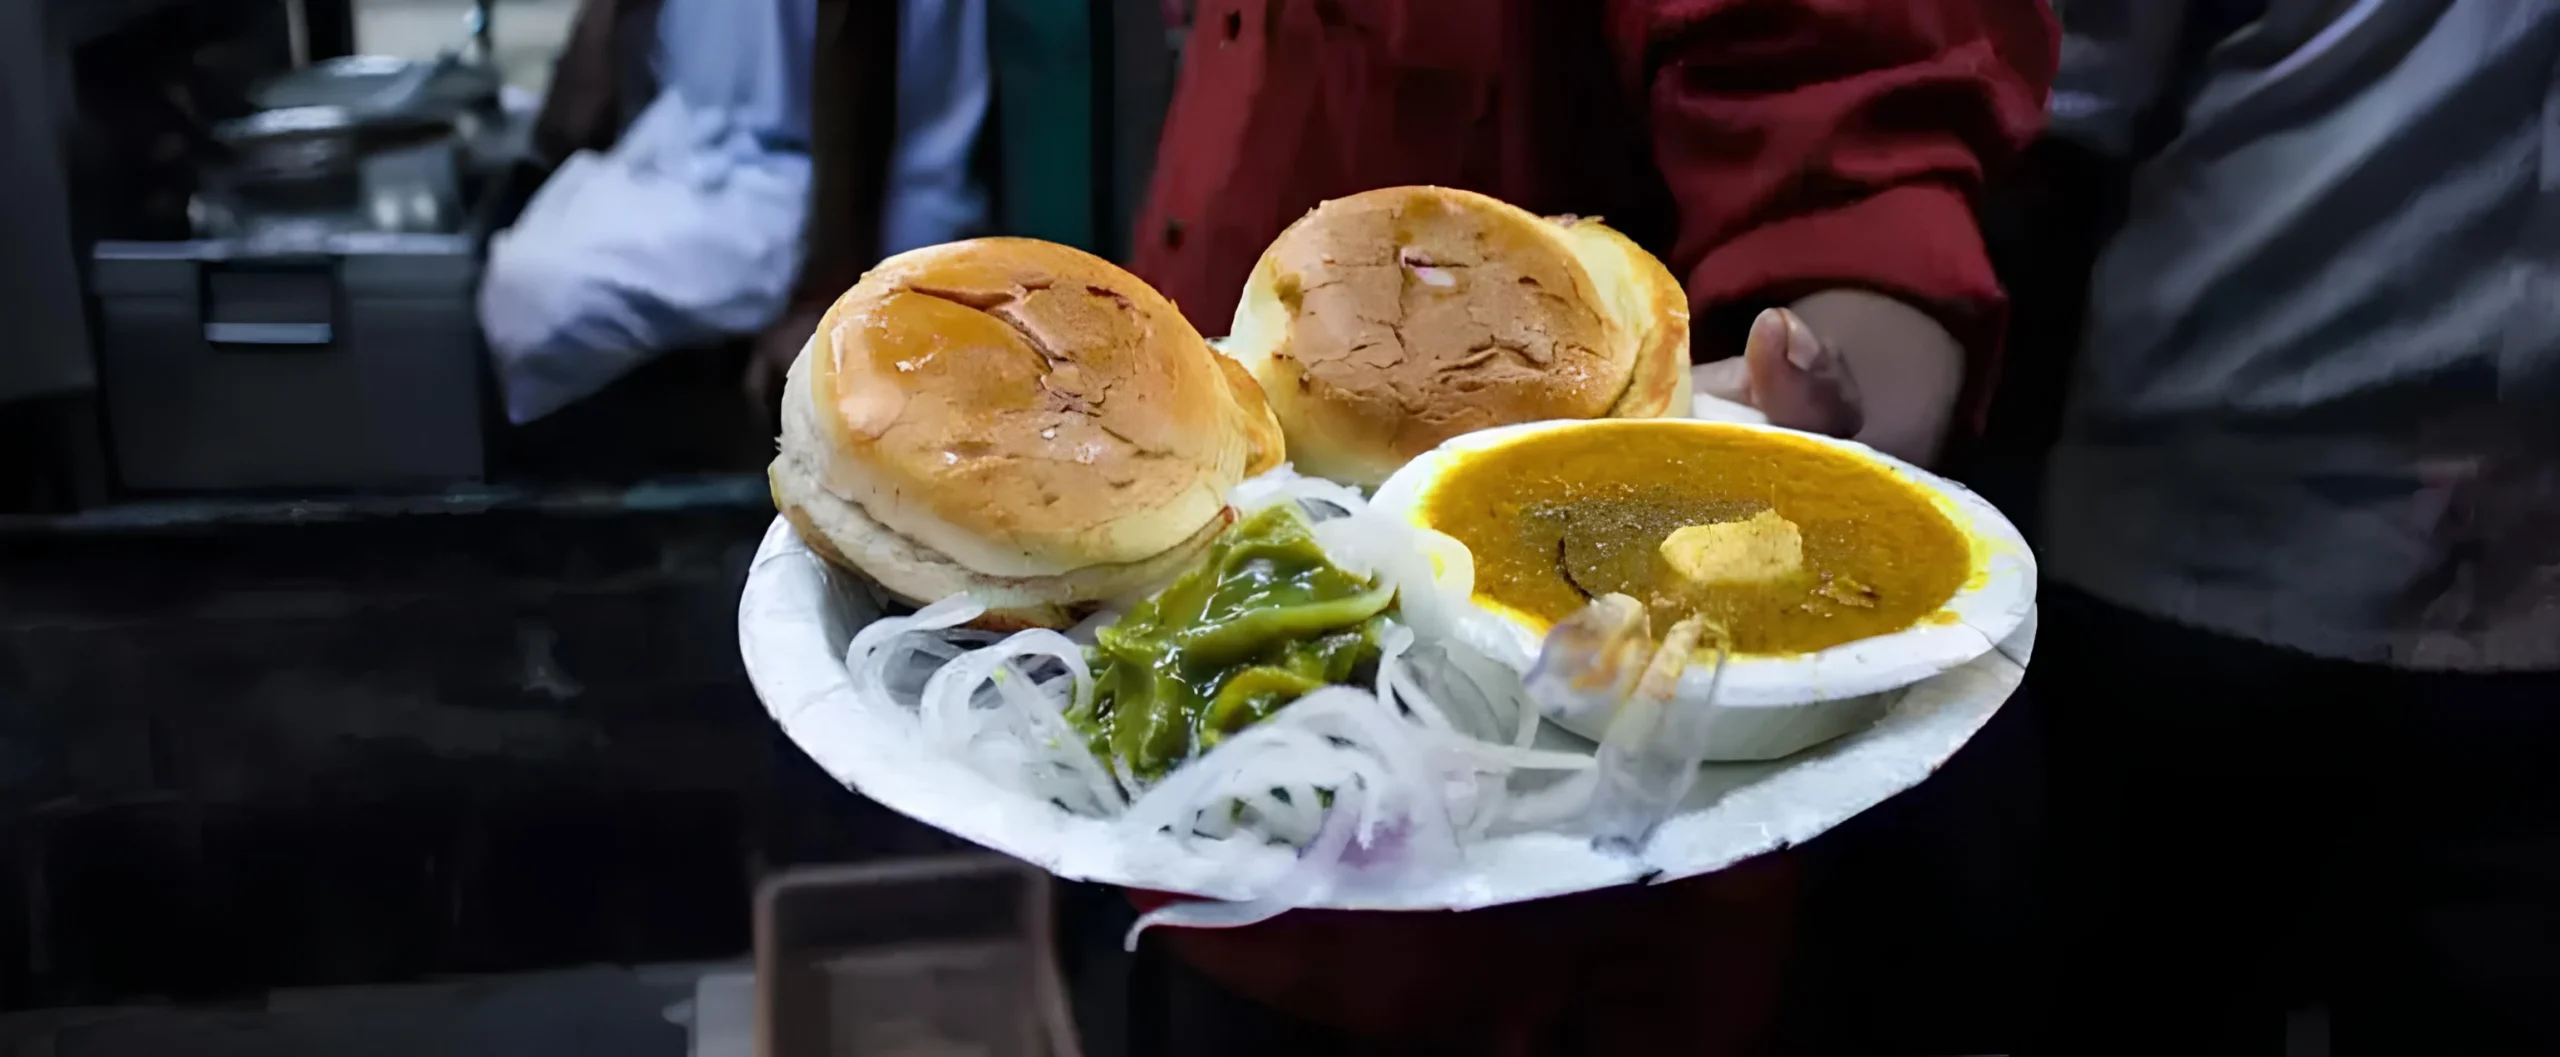 street foods in Delhi